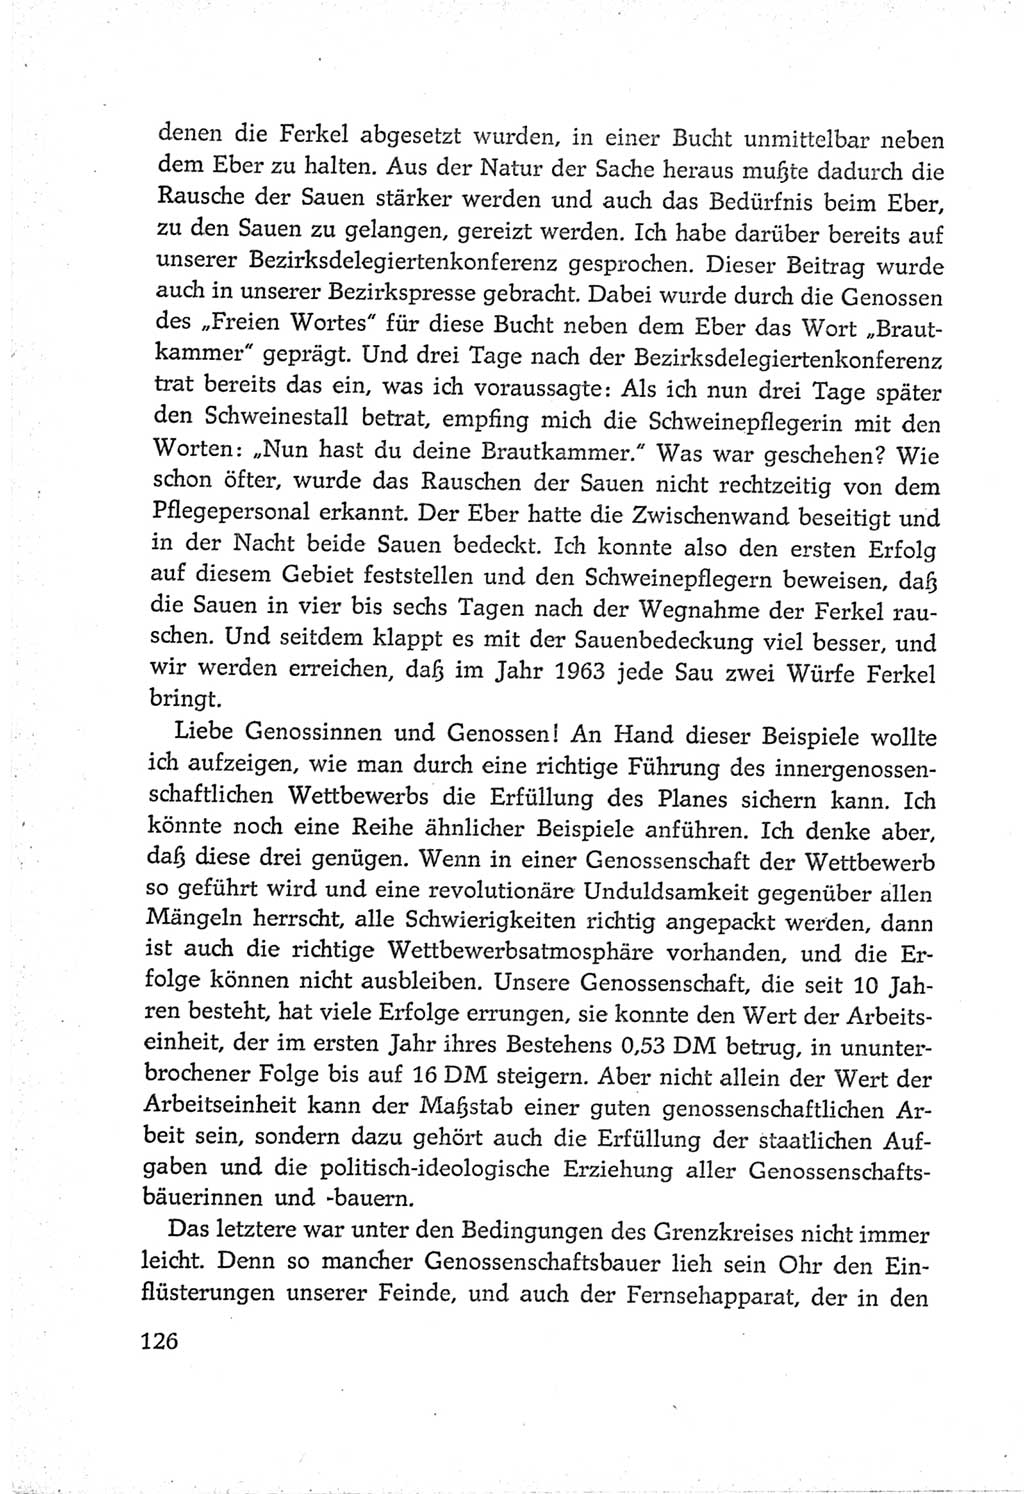 Protokoll der Verhandlungen des Ⅵ. Parteitages der Sozialistischen Einheitspartei Deutschlands (SED) [Deutsche Demokratische Republik (DDR)] 1963, Band Ⅲ, Seite 126 (Prot. Verh. Ⅵ. PT SED DDR 1963, Bd. Ⅲ, S. 126)